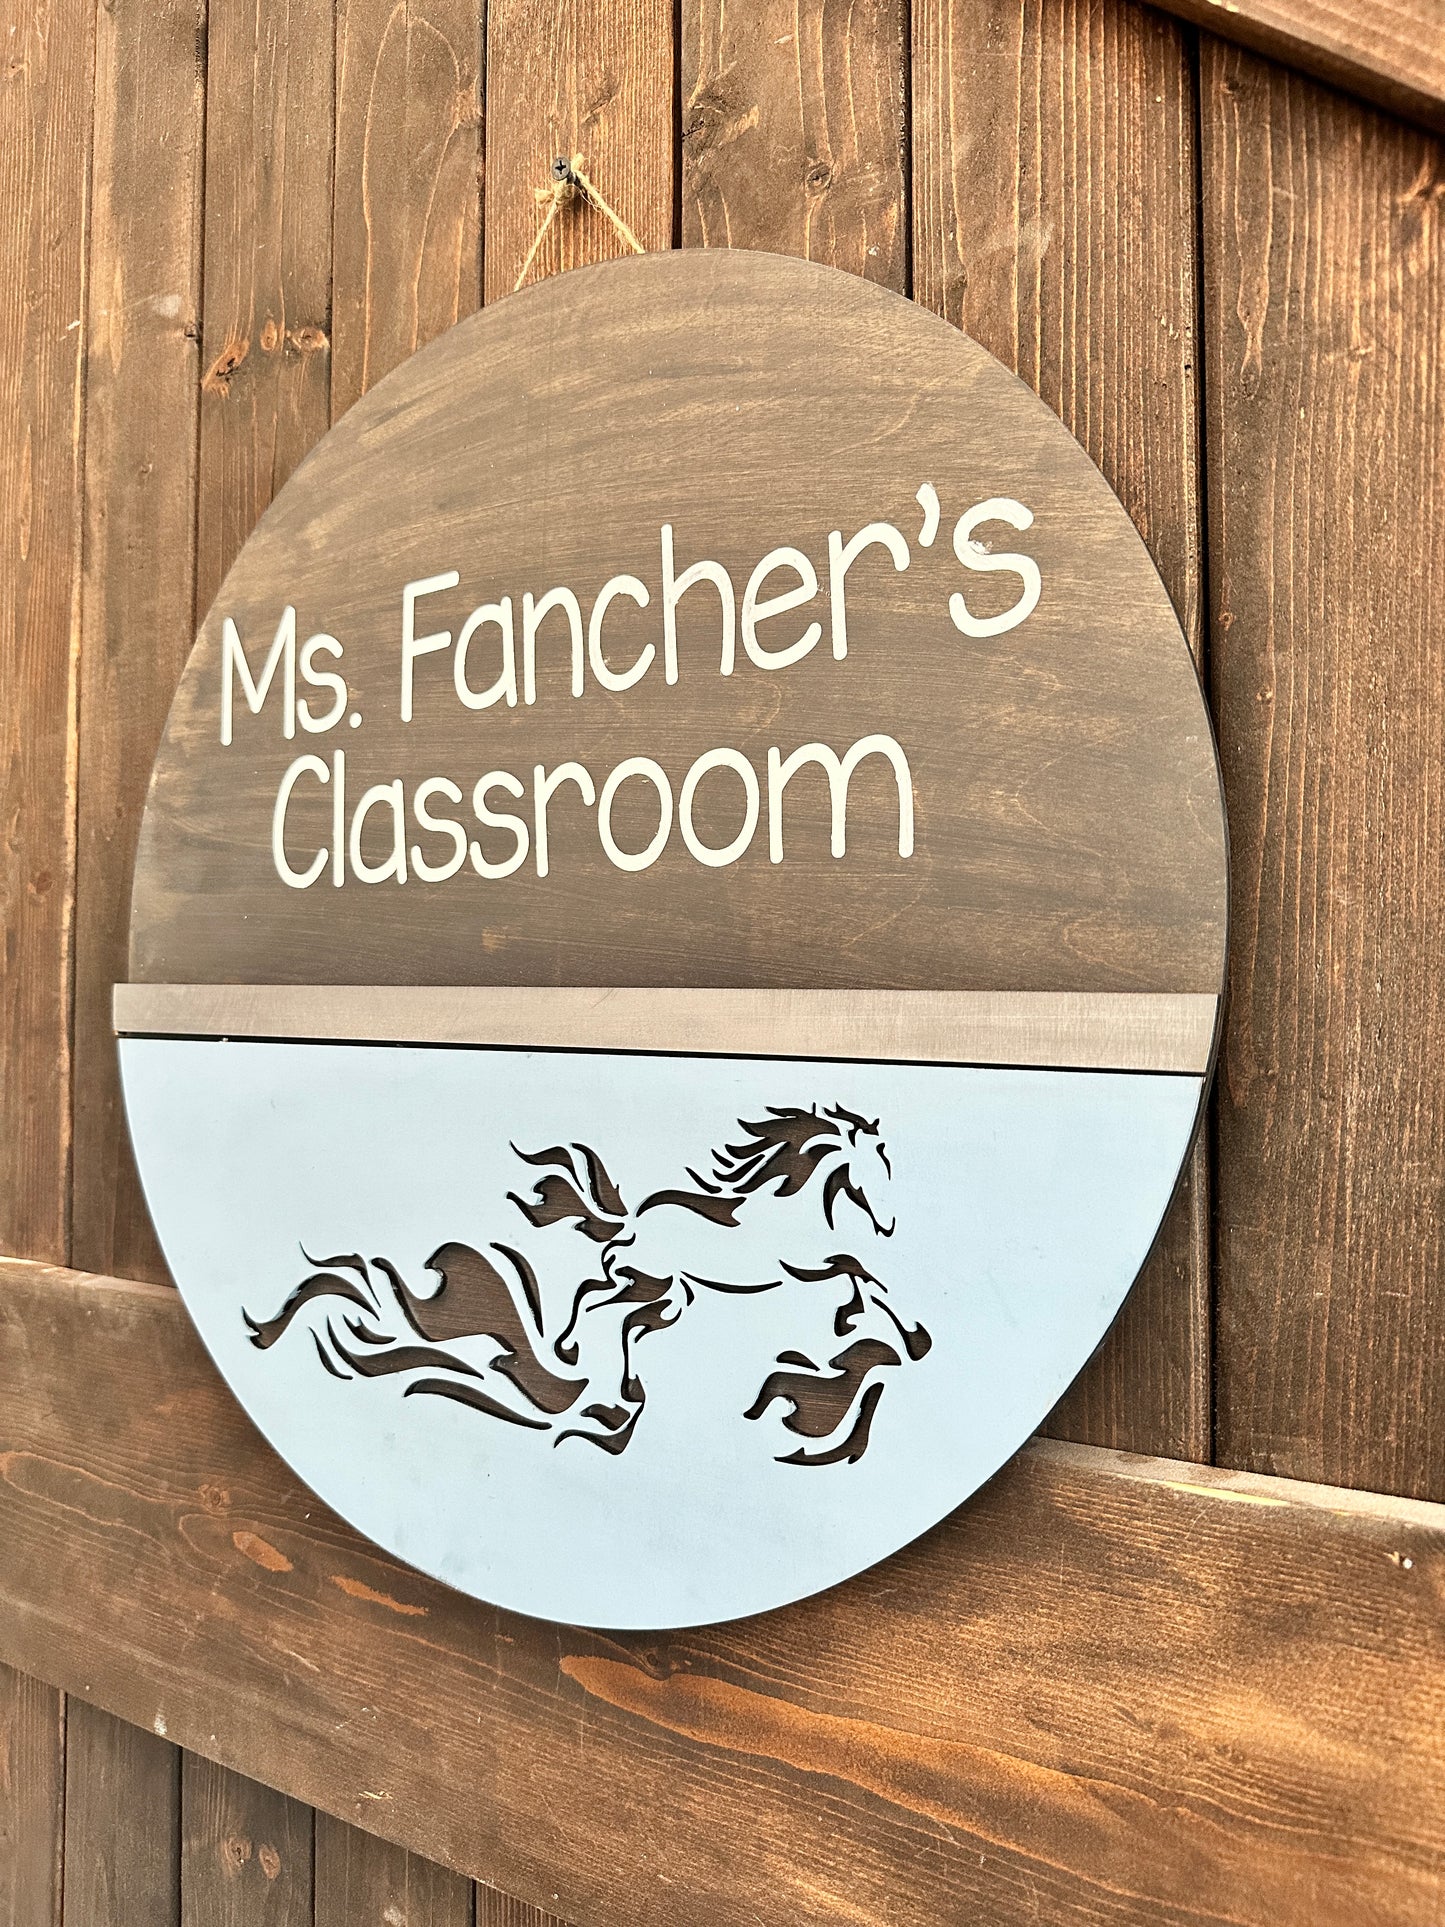 Wildlight Trailblazers Teacher Classroom Door Hanger Personalized P02850